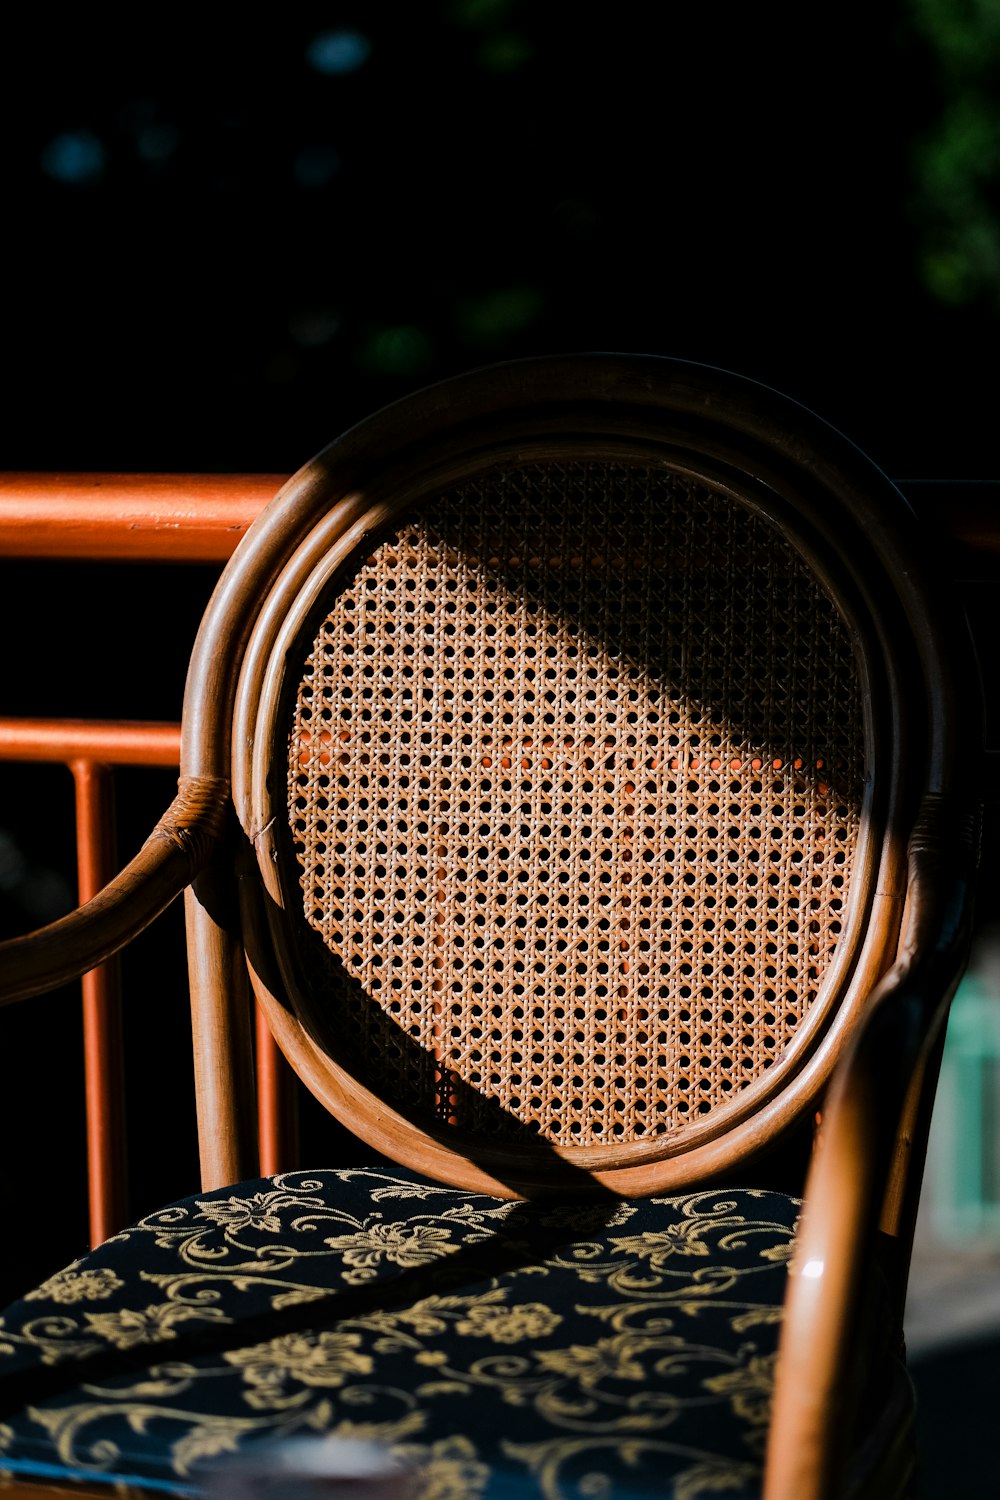 sedia in legno marrone con tovaglia rotonda bianca e nera